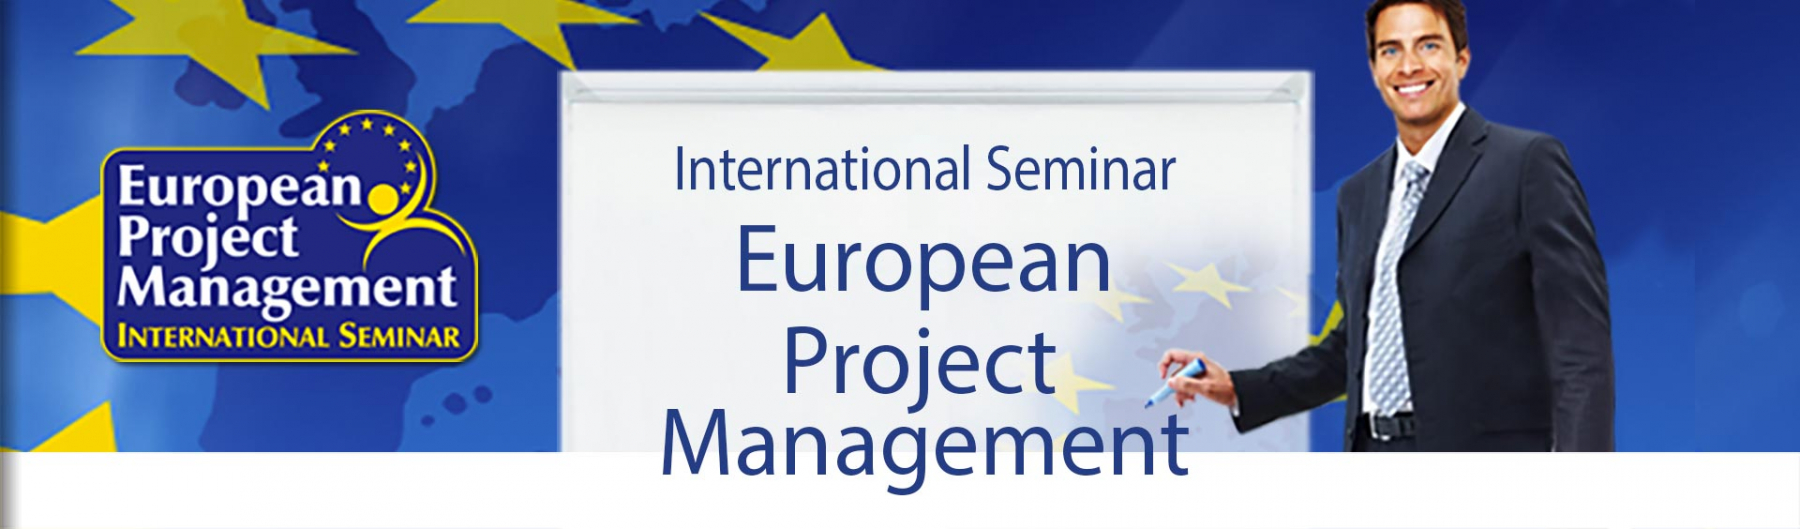 International Seminar European Project Management